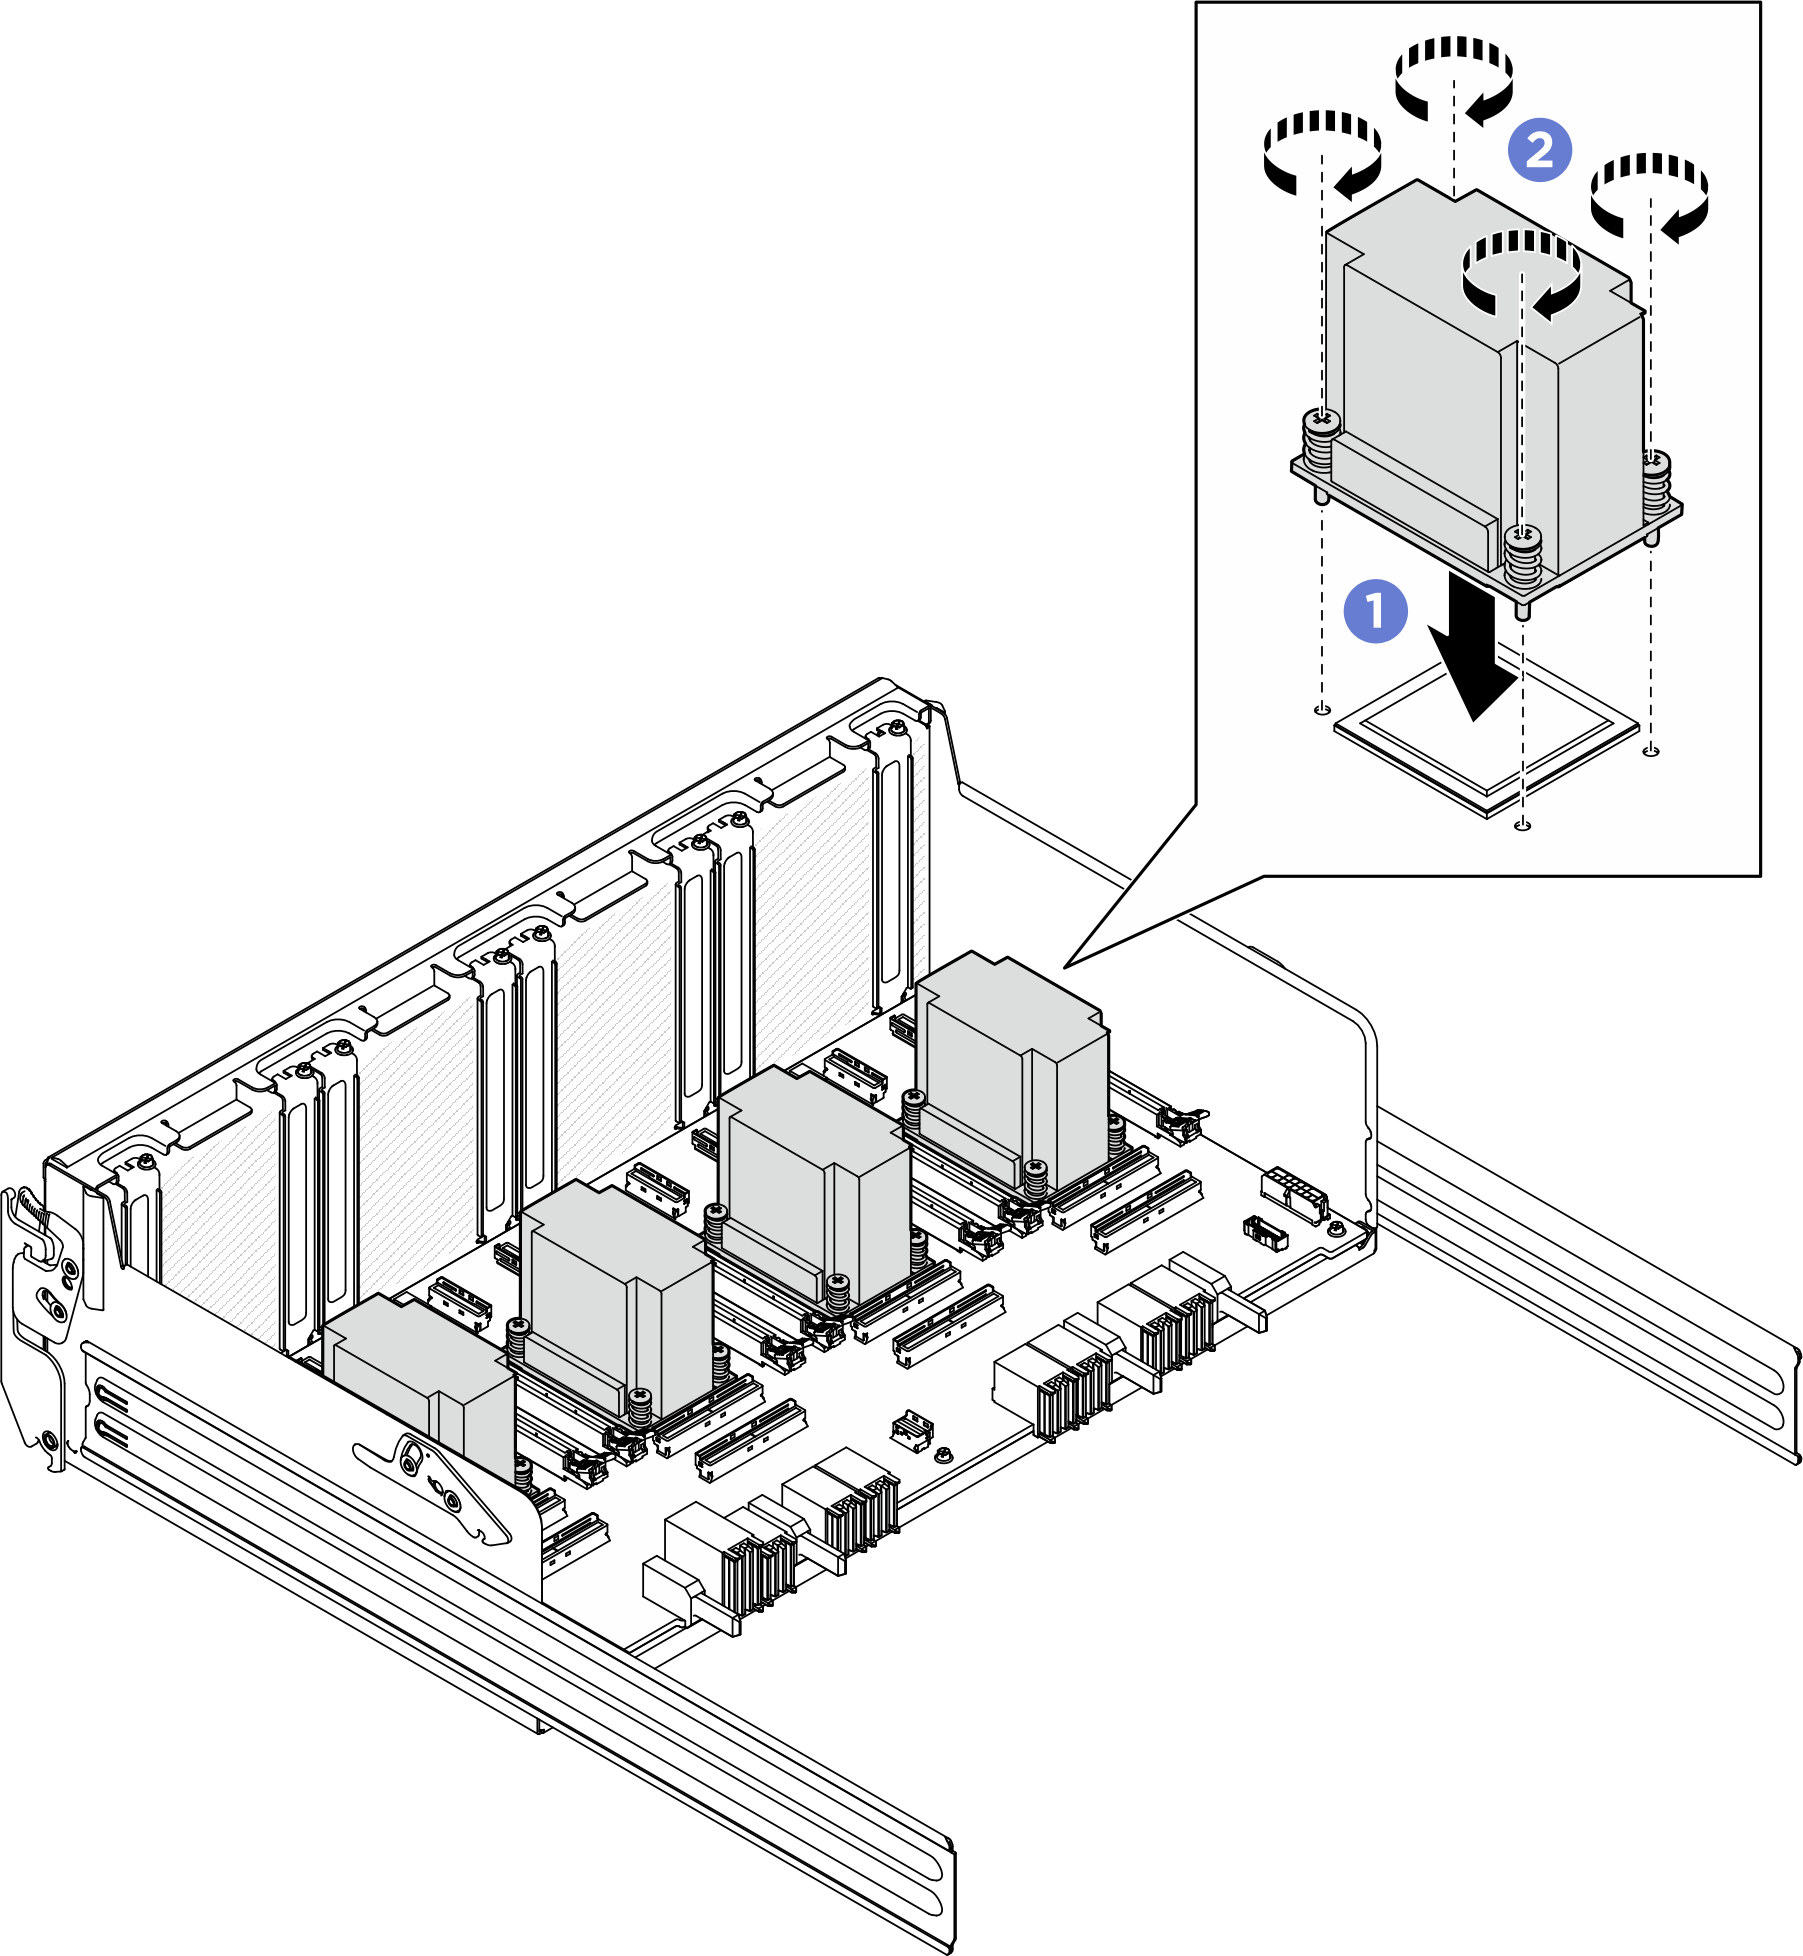 PCIe 交換器板散熱槽 installation